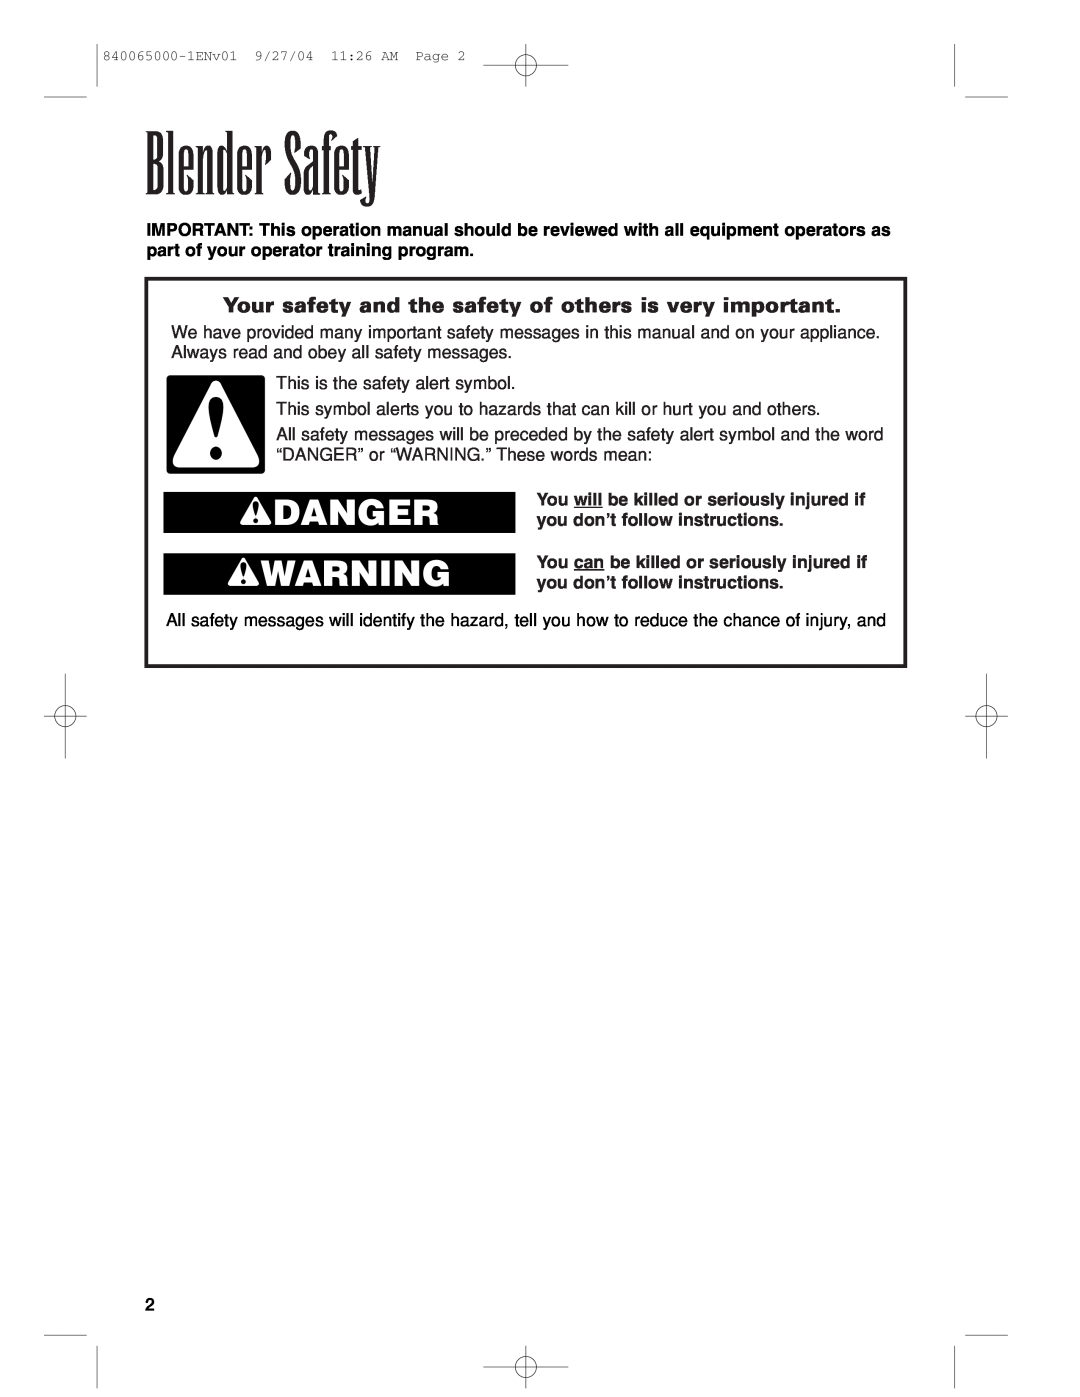 Proctor-Silex 994 operation manual Blender Safety, wDANGER wWARNING 